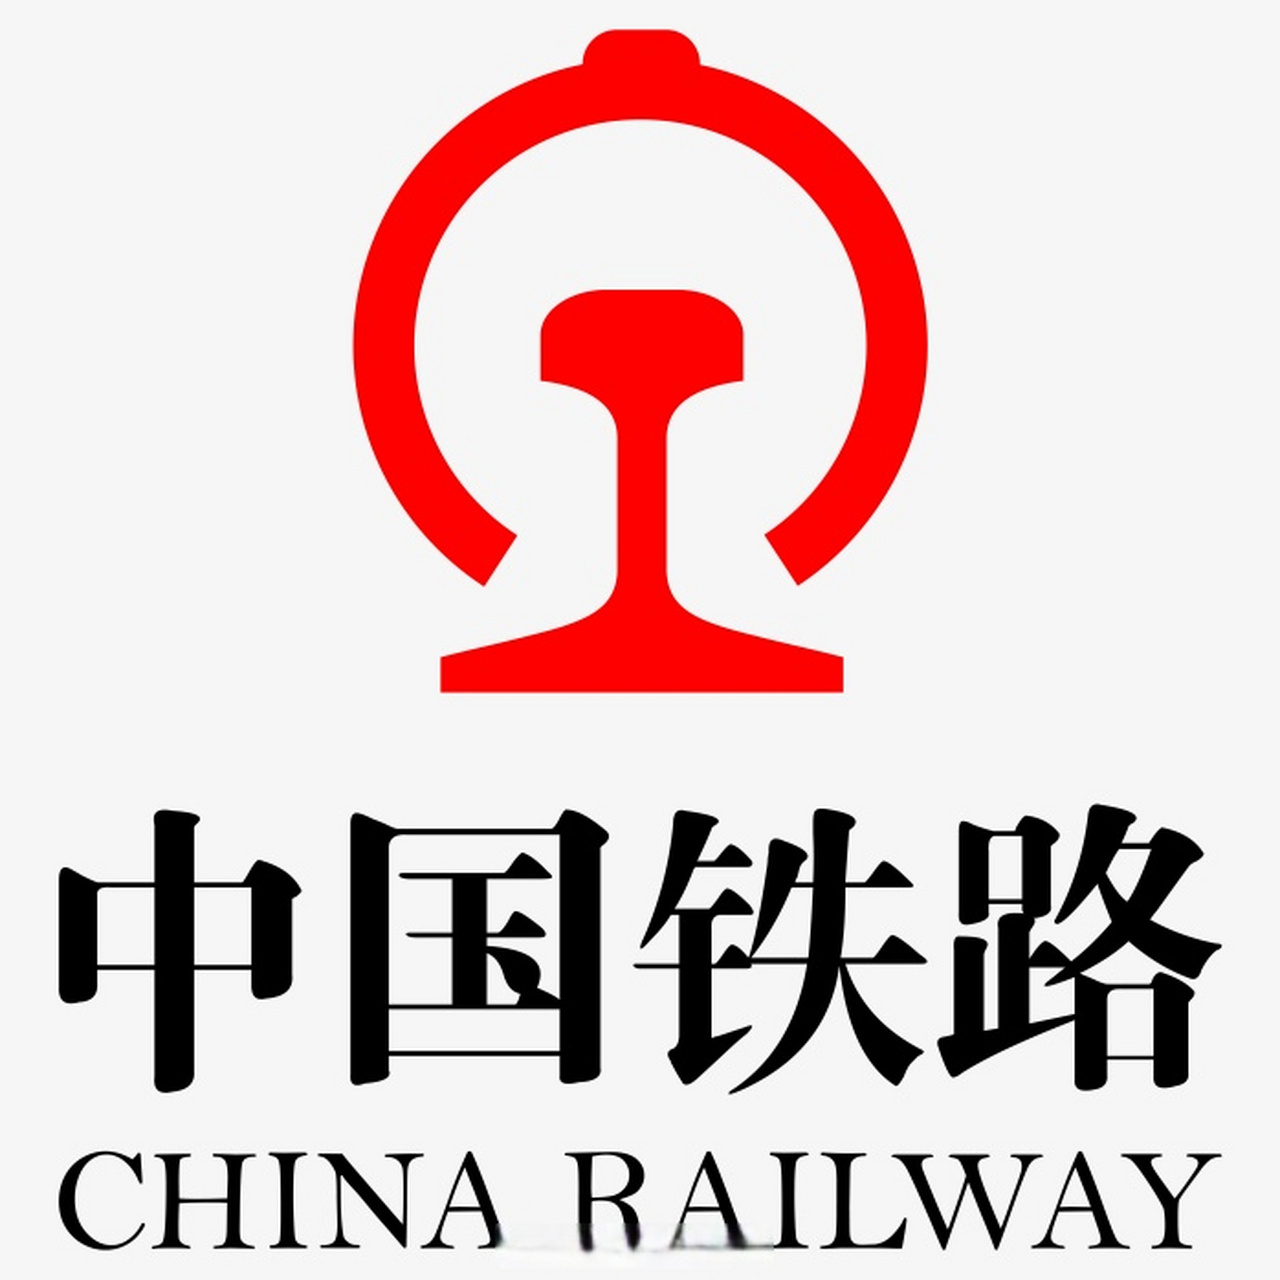 小编打刚记事起,就一直觉得中国铁路这个logo非常酷,后来知道这个图案